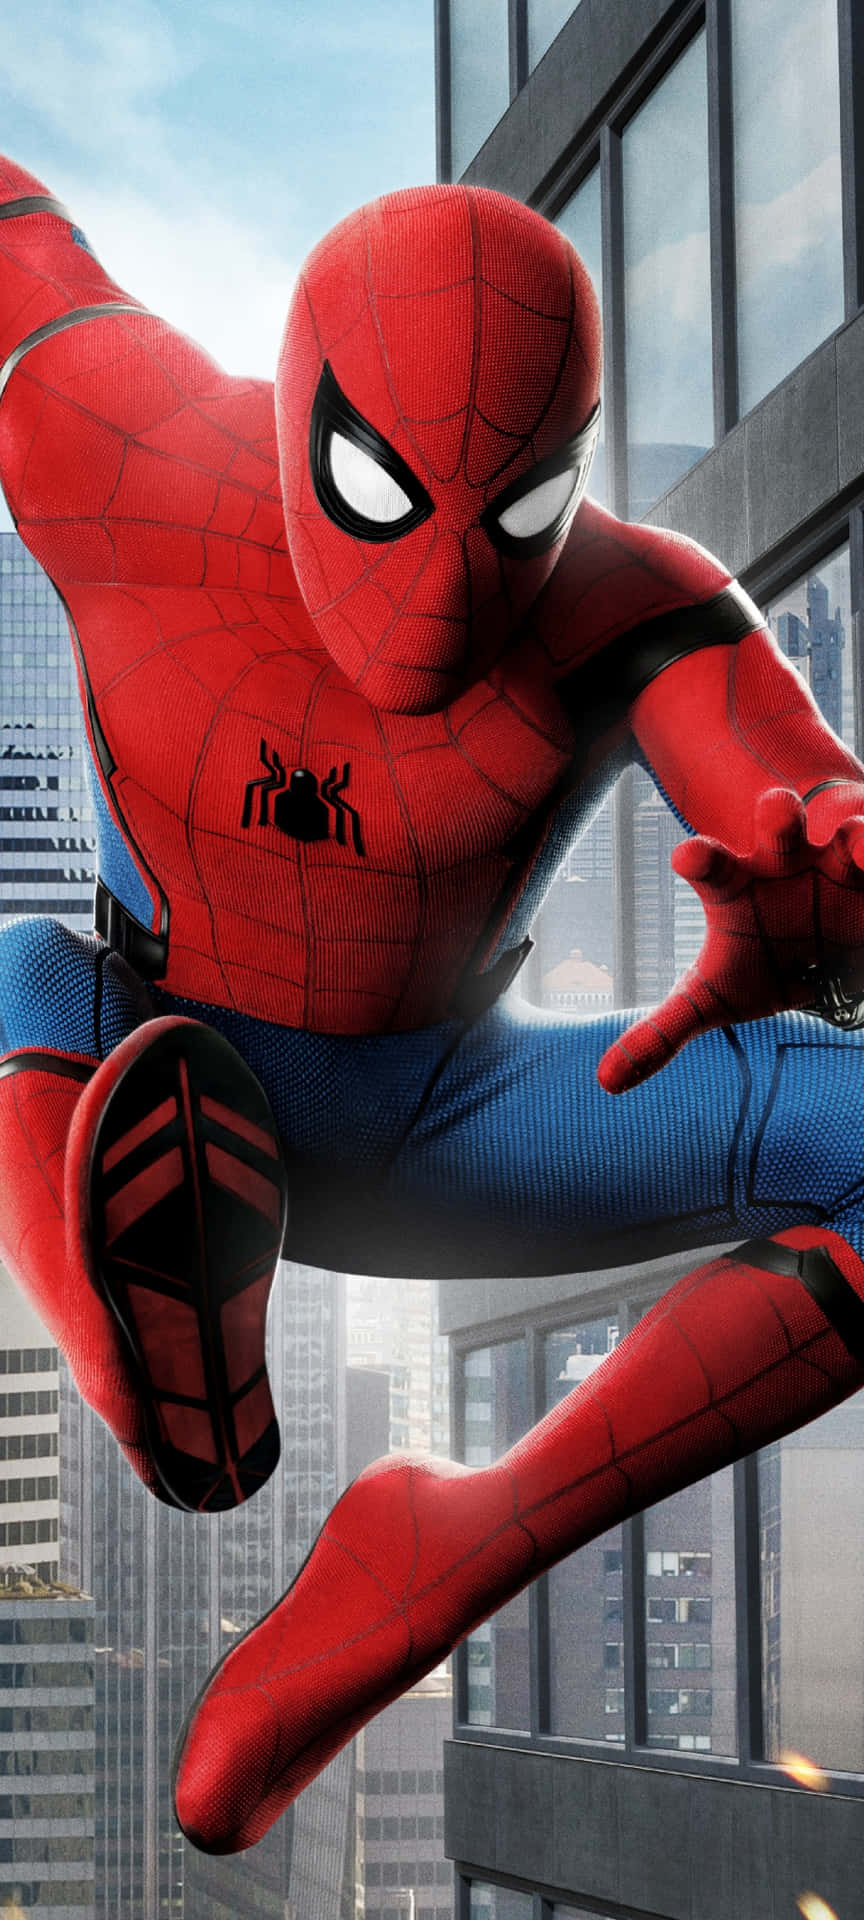 Zweider Bekanntesten Marvel-charaktere, Spider-man Und Iron Man, Treten Gegeneinander An. Wallpaper